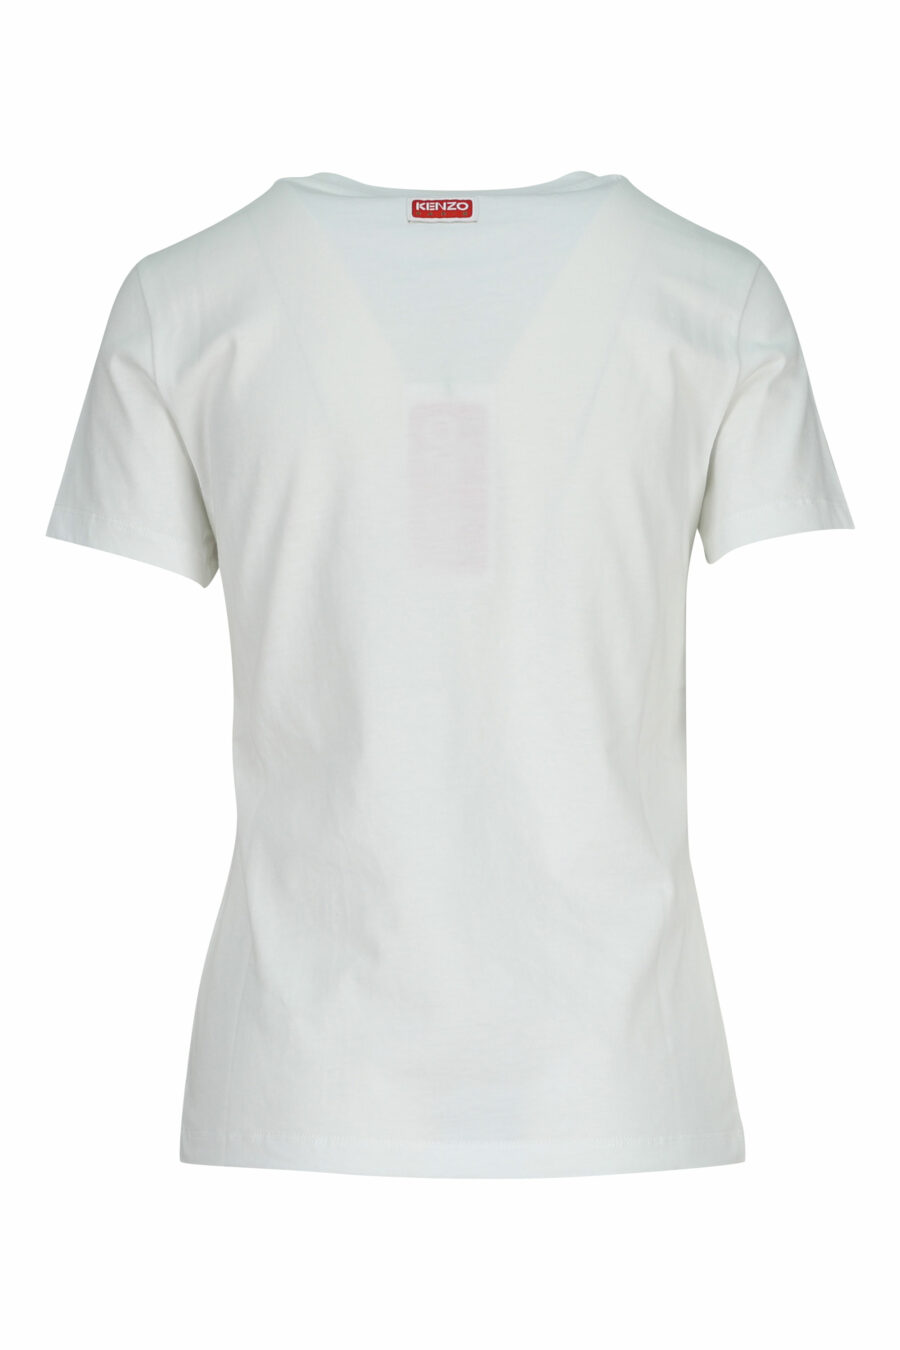 Camiseta blanca con minilogo "kenzo elephant" - 3612230620117 3